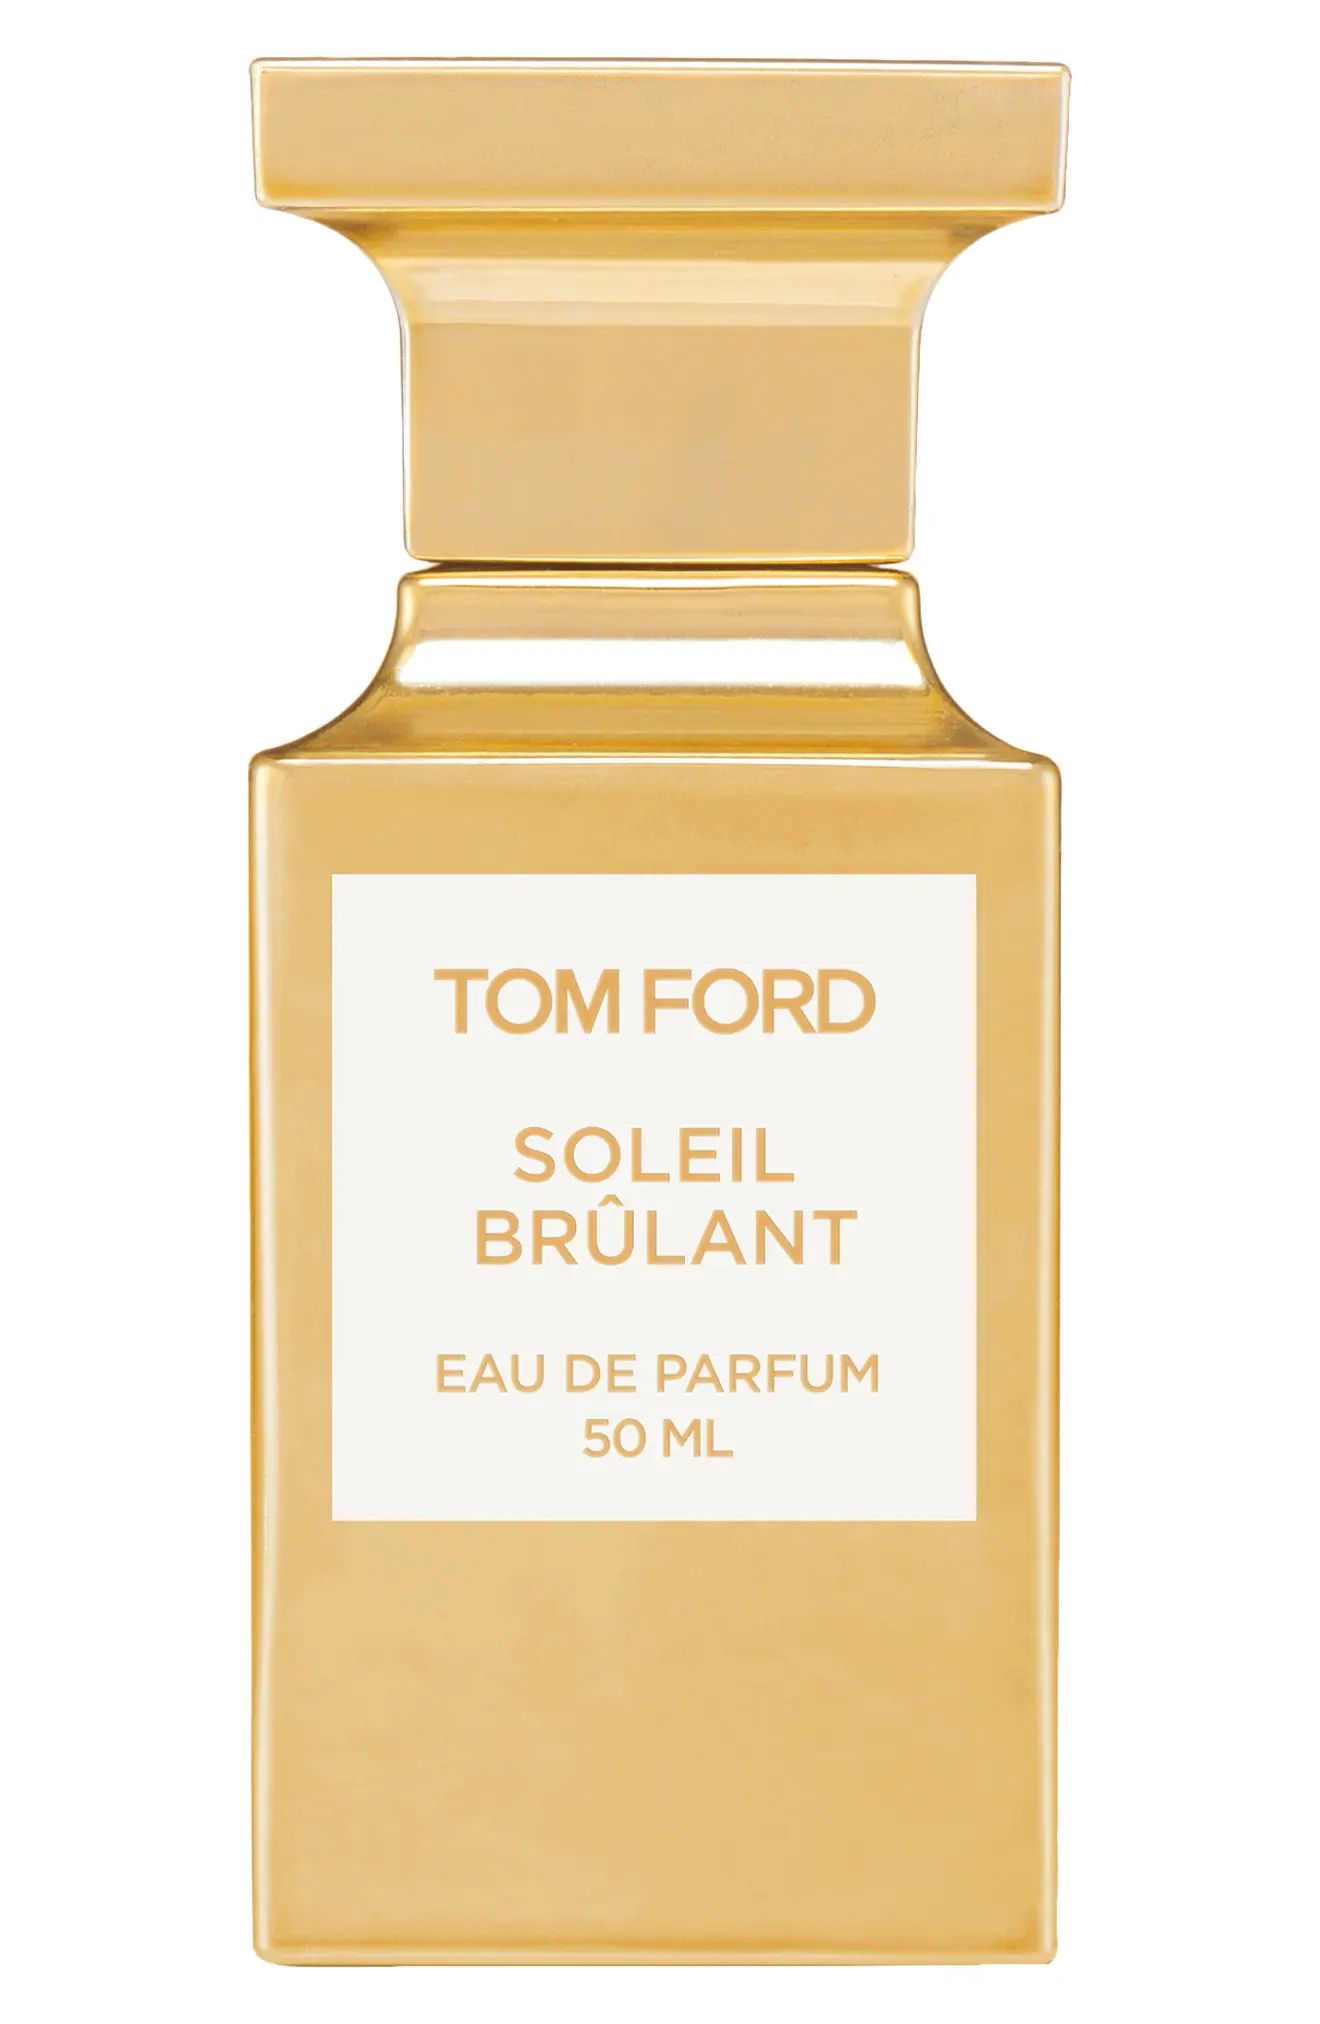 Tom Ford Soleil Brulant Eau de Parfum at Nordstrom, Size 1.7 Oz | Nordstrom